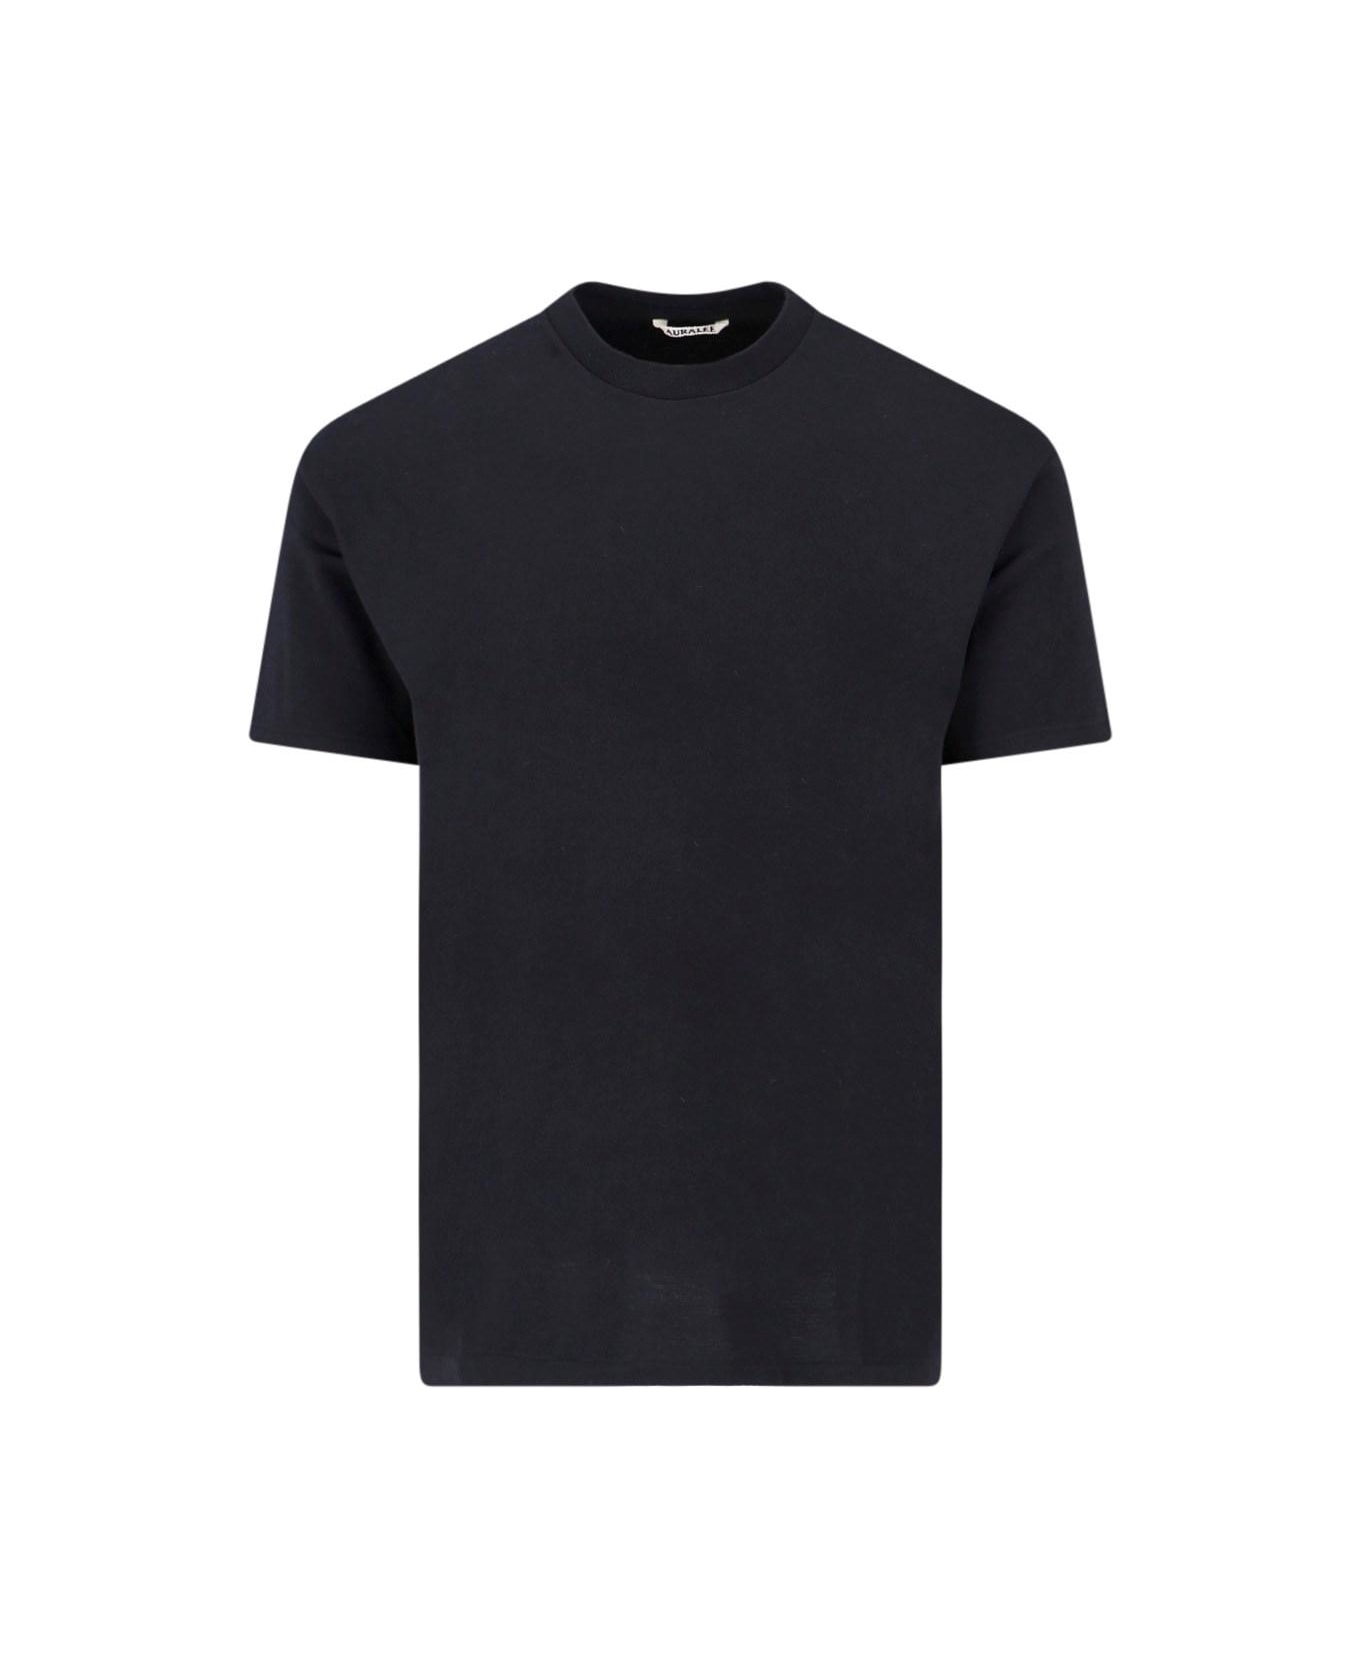 Auralee Basic T-shirt - BLACK